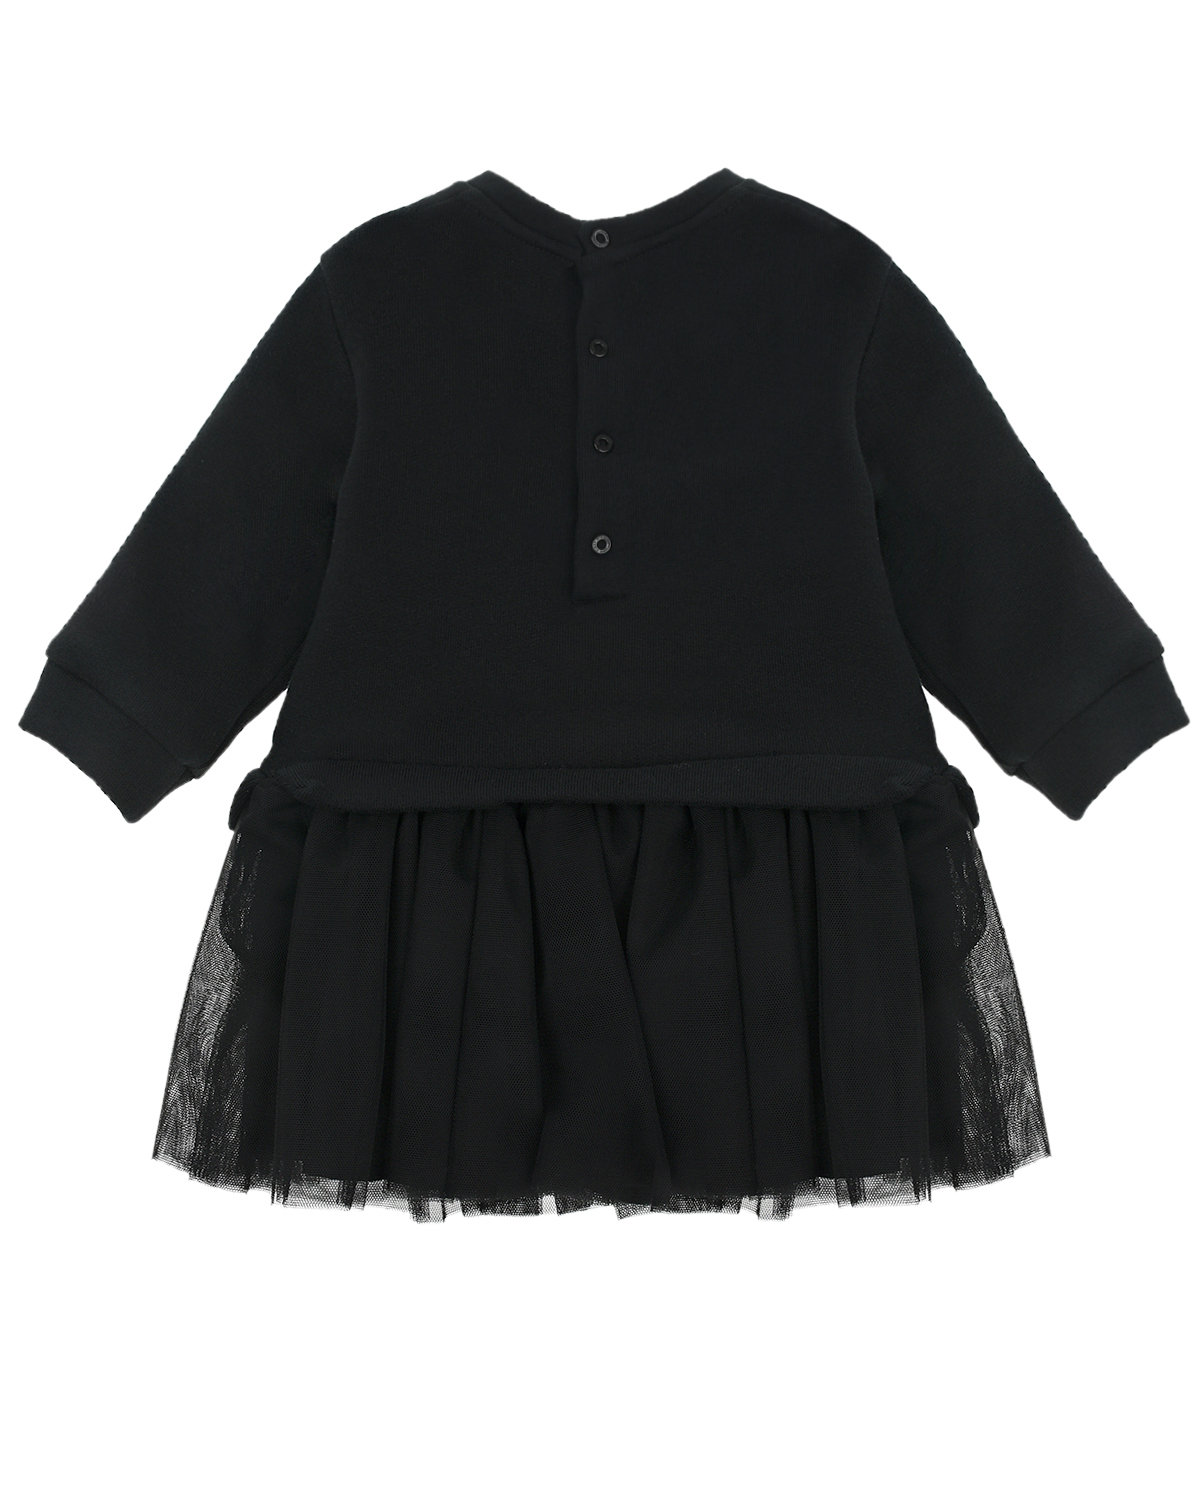 Платье с имитацией юбки и свитшота Balmain детское, размер 68, цвет черный - фото 2